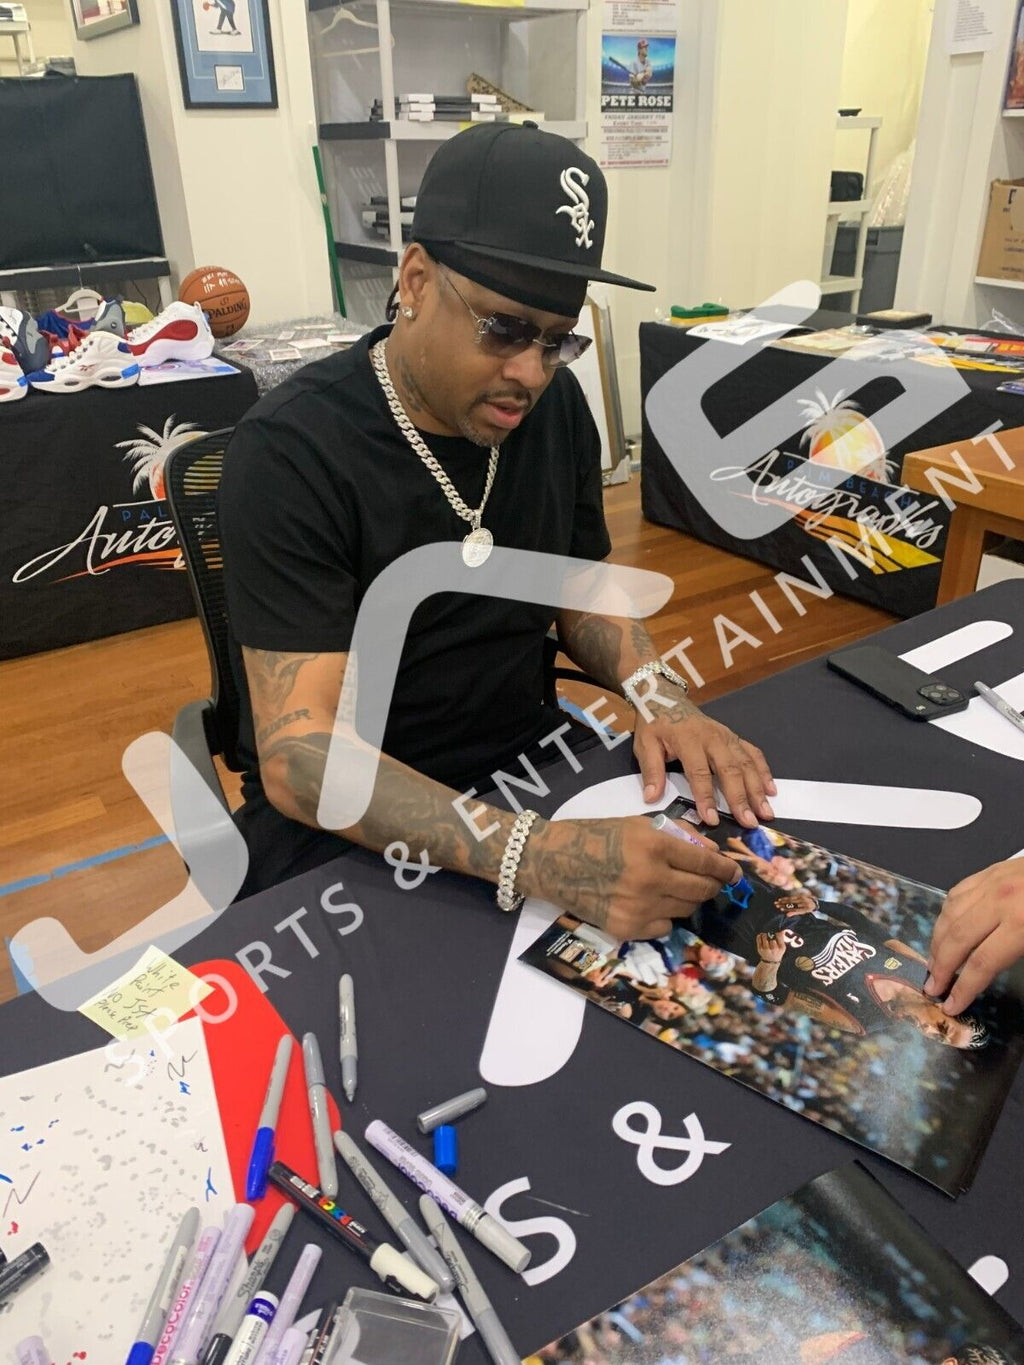 Allen Iverson signed inscribed framed 11x14 photo 76ers NBA JSA suede matte